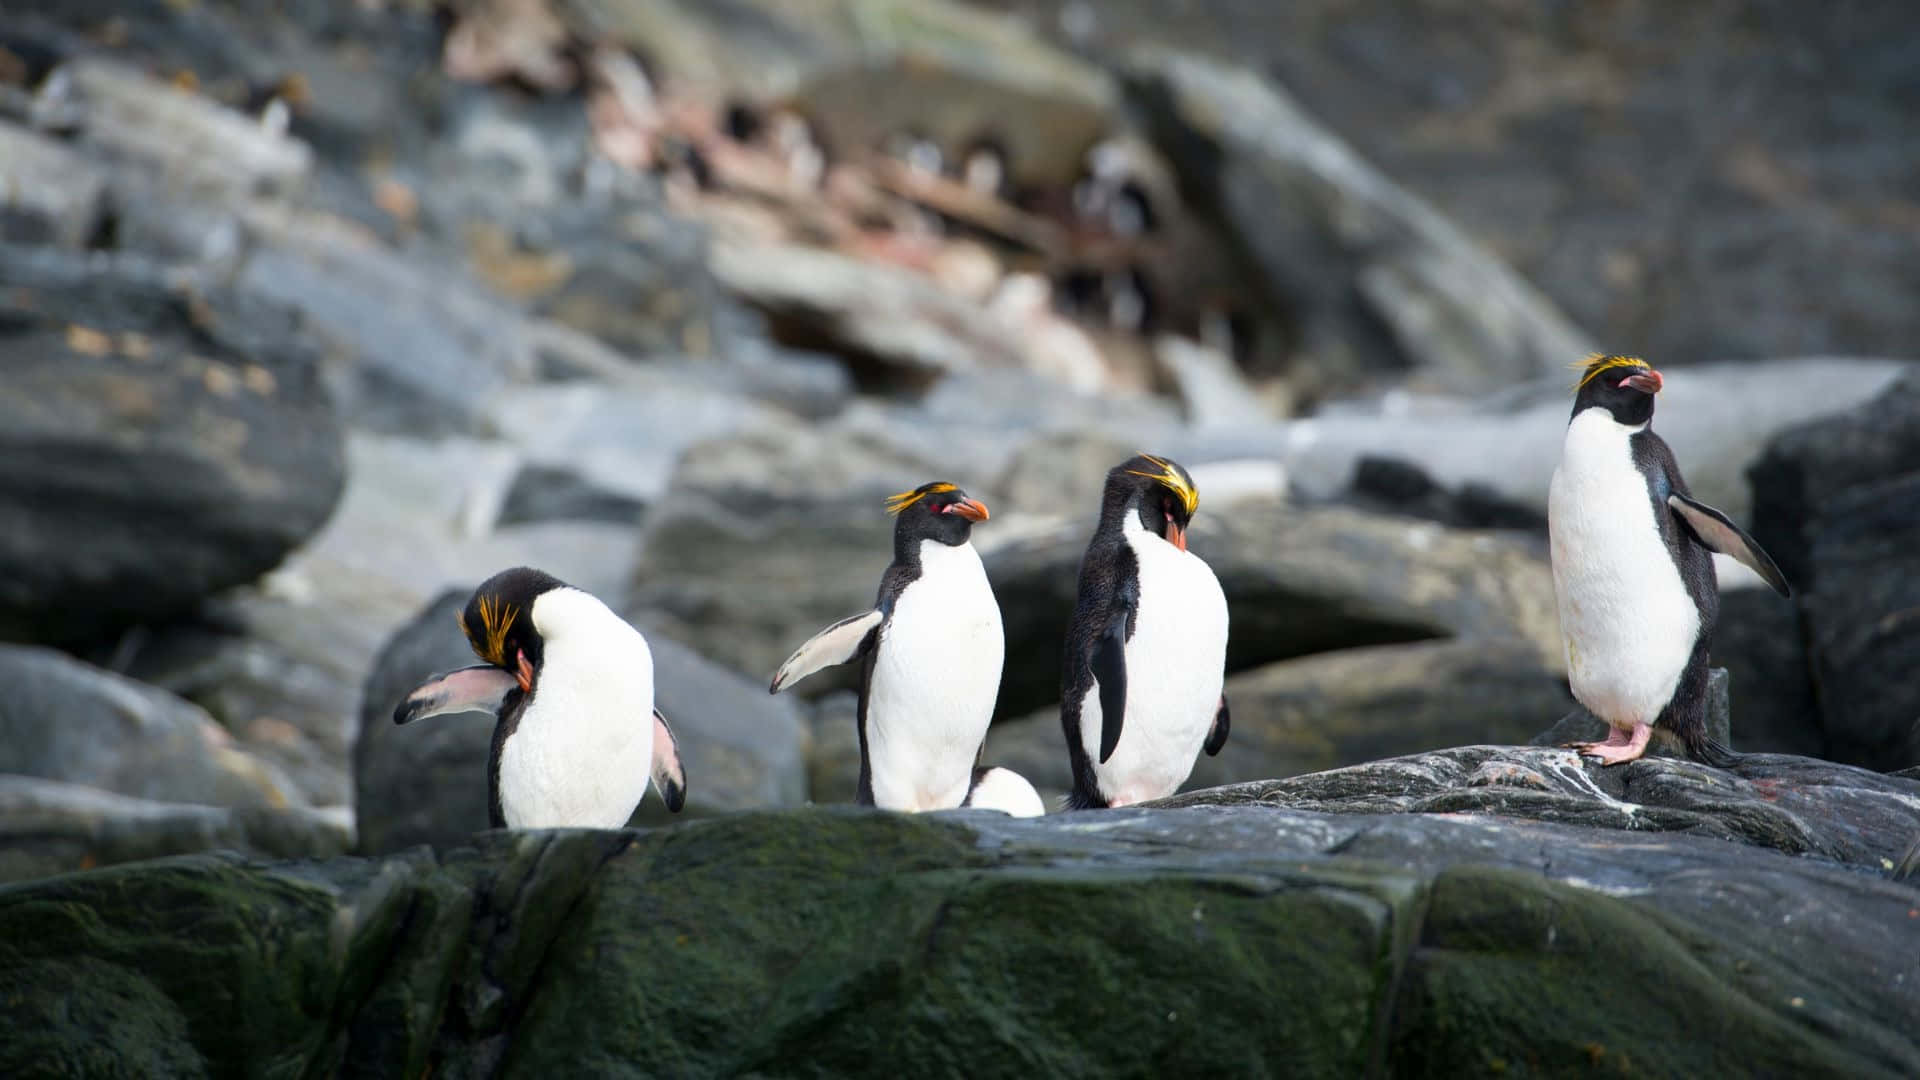 Rockhopper Penguins Gathering On Rocks.jpg Wallpaper